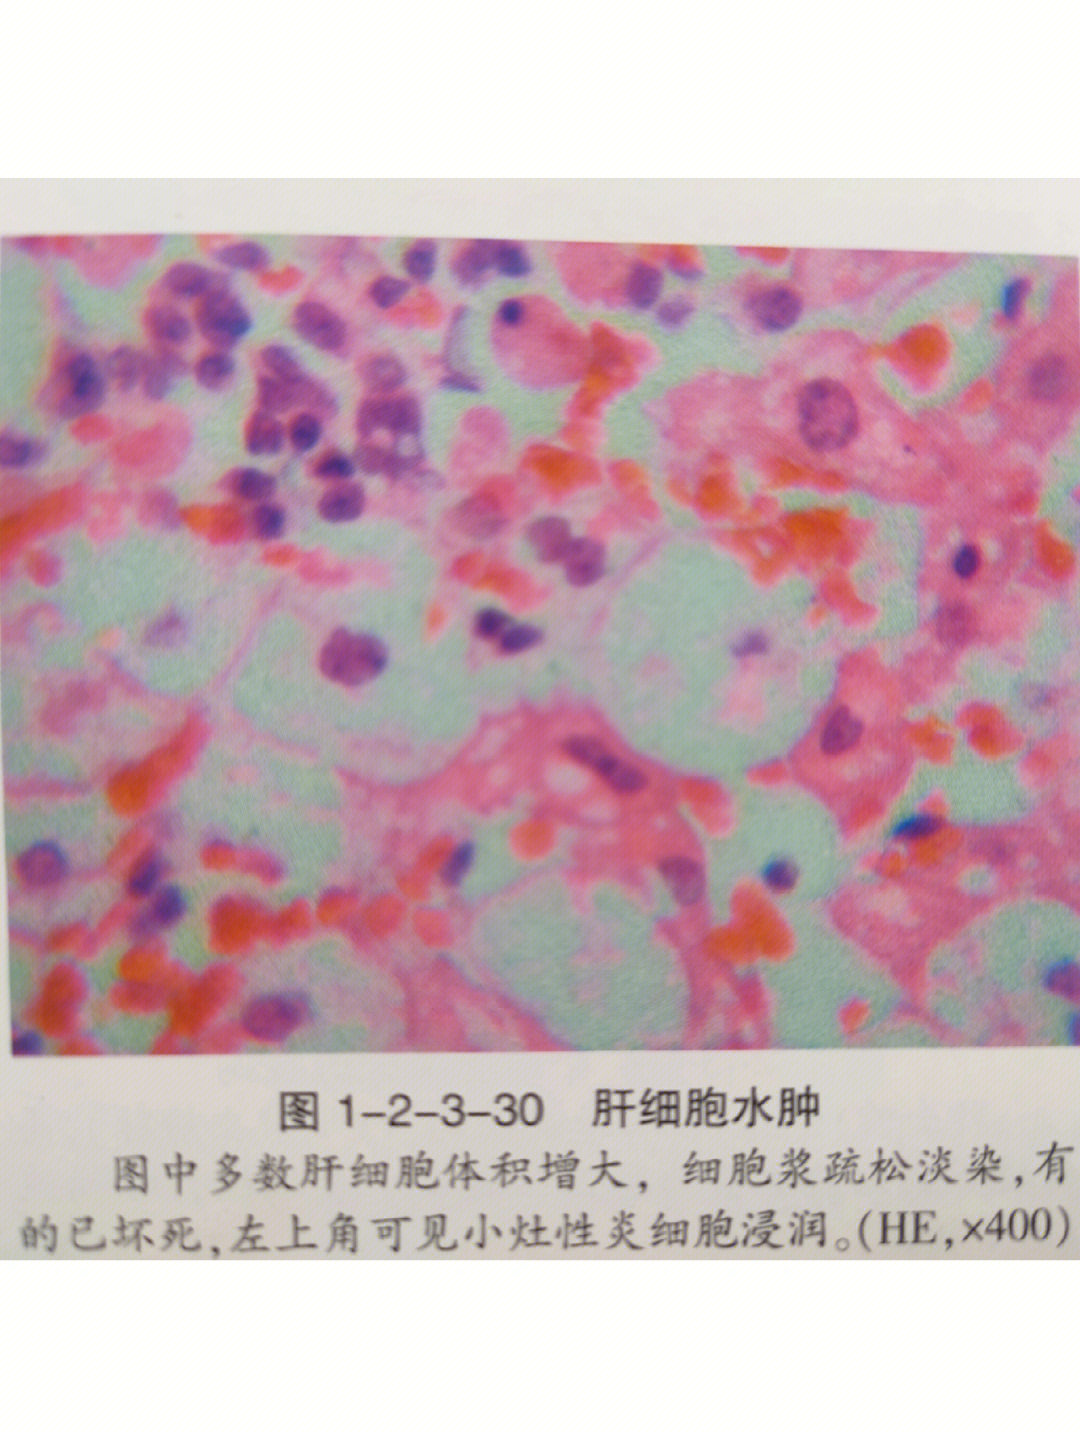 肝细胞水肿颗粒变性图片